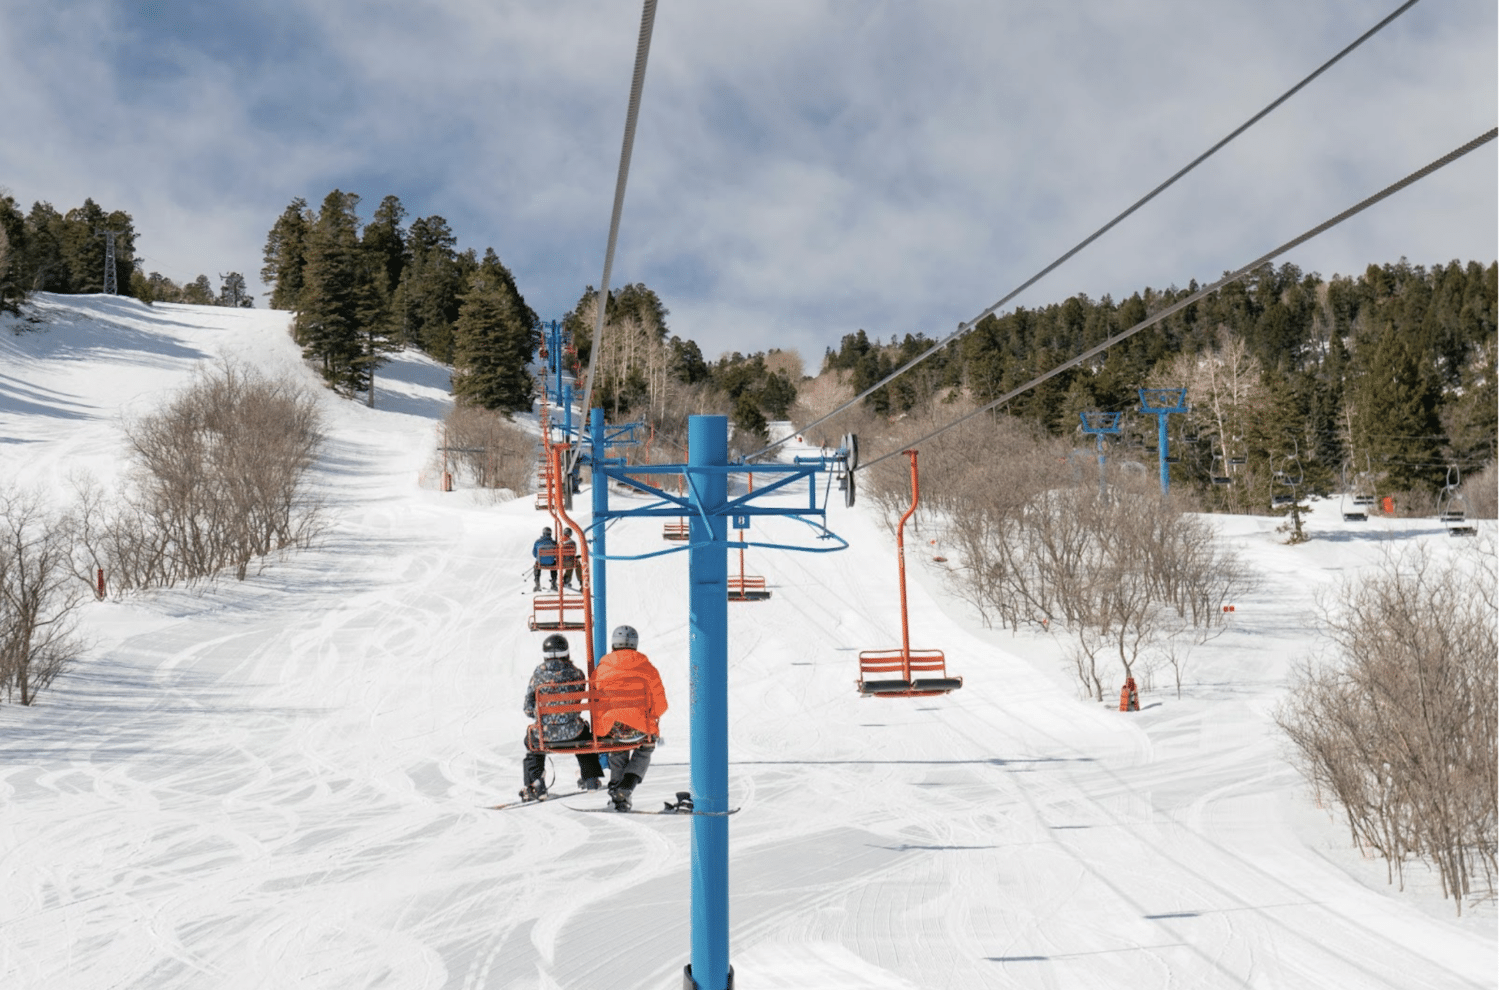 Ski lift at Sandia Peak Ski Area